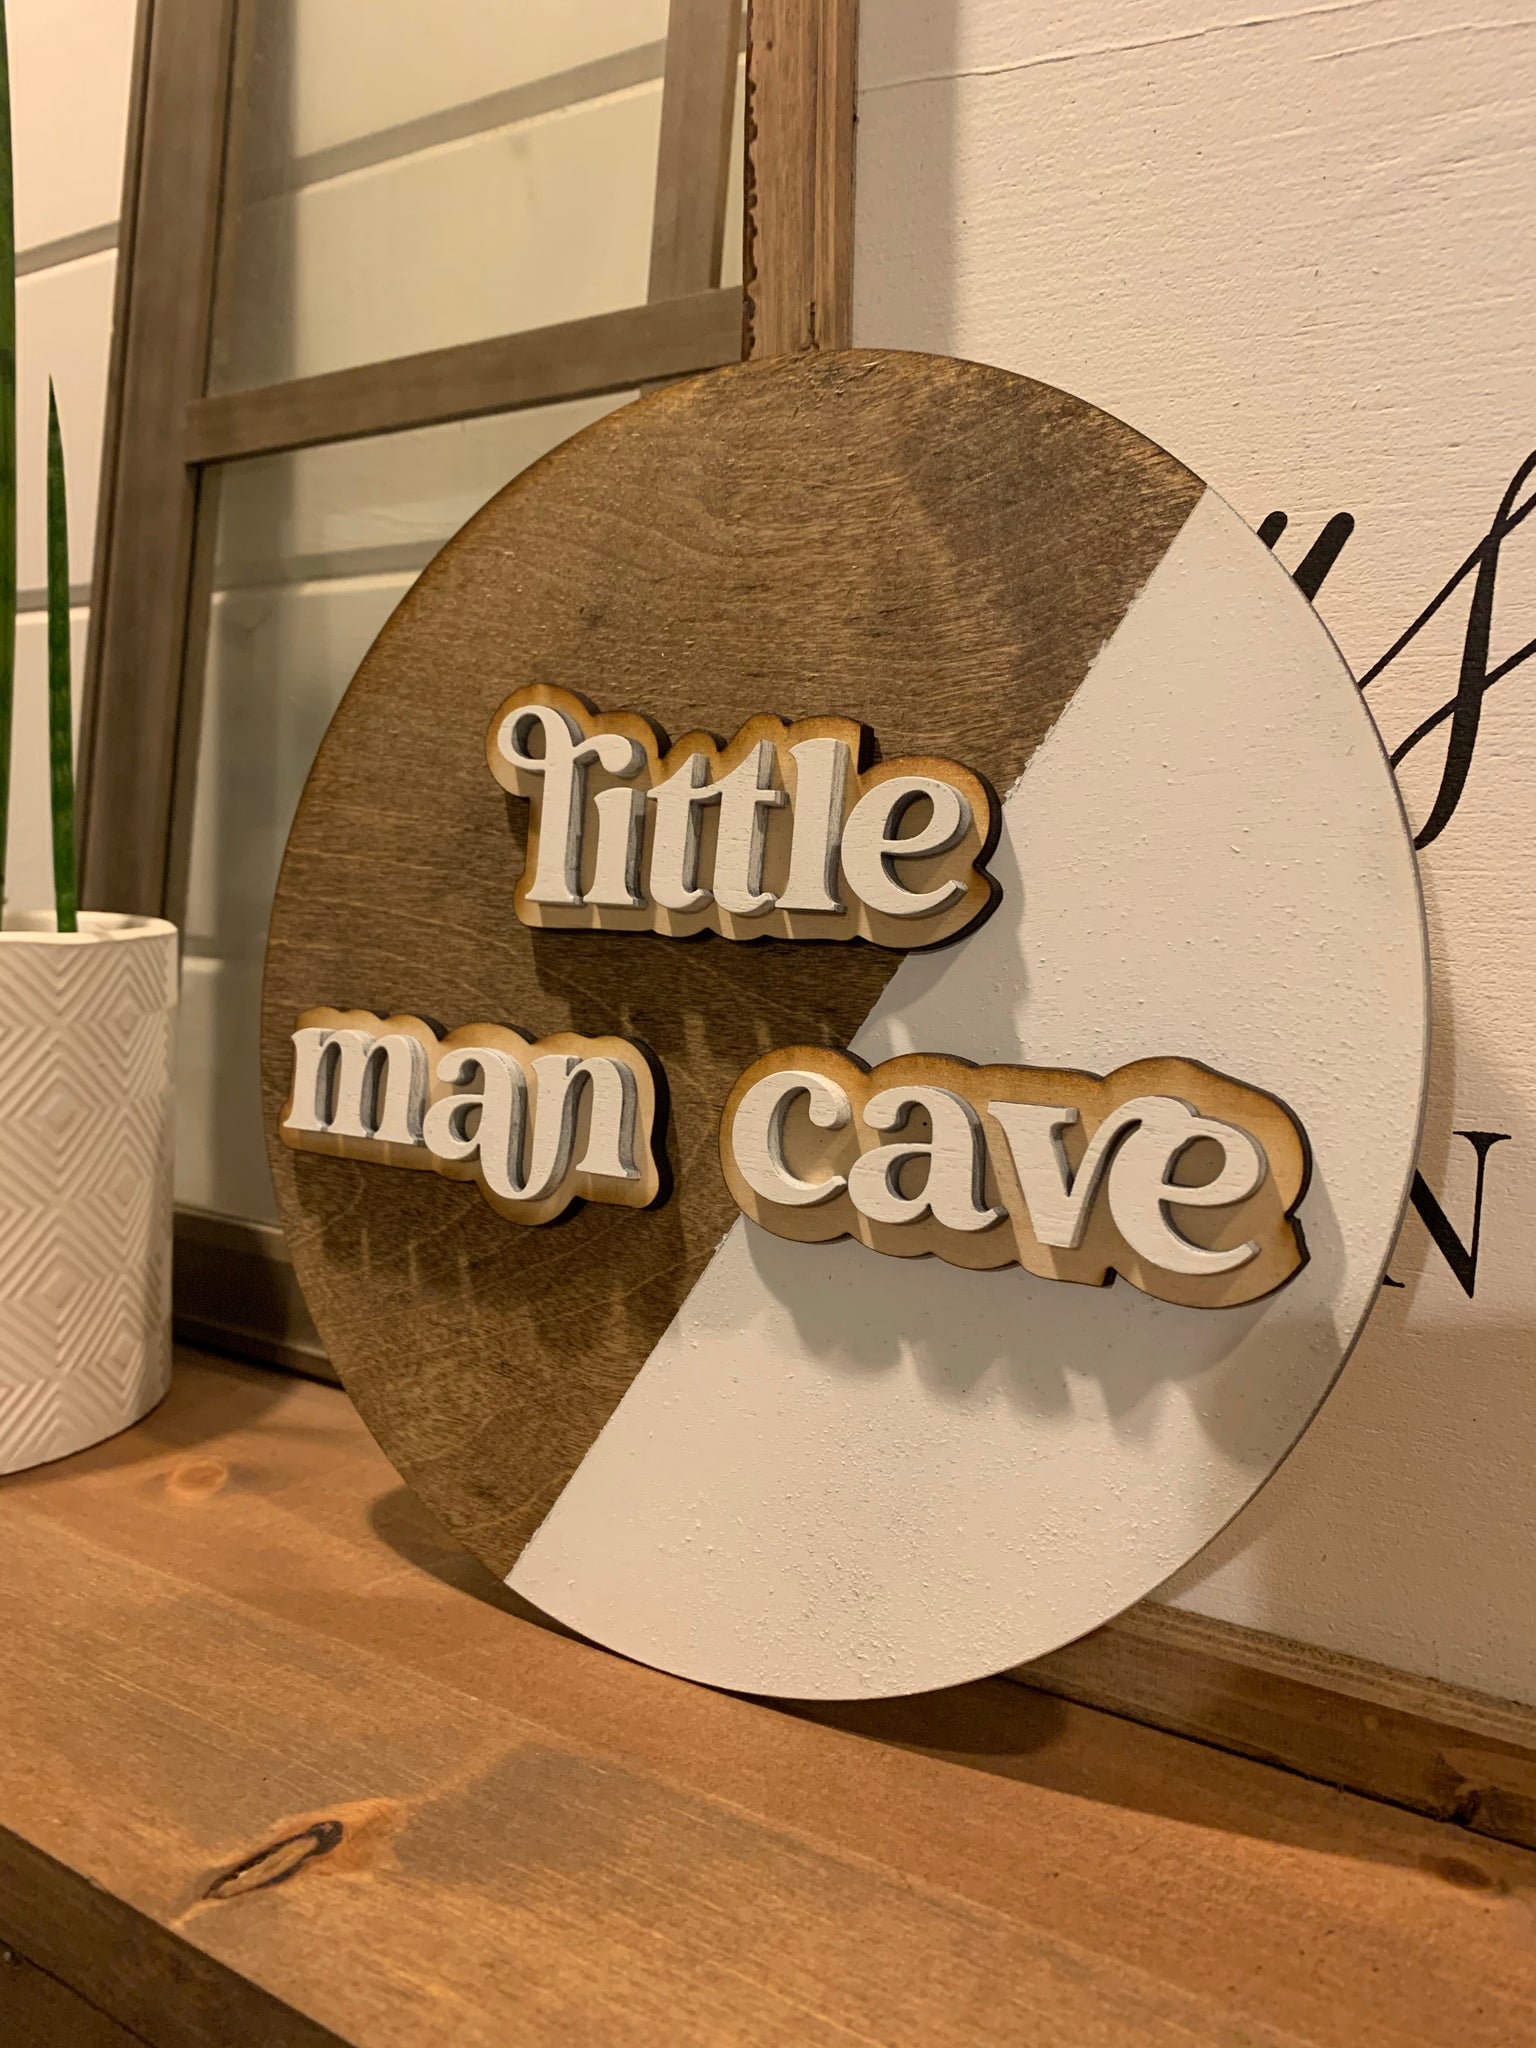 Little Man Cave Round